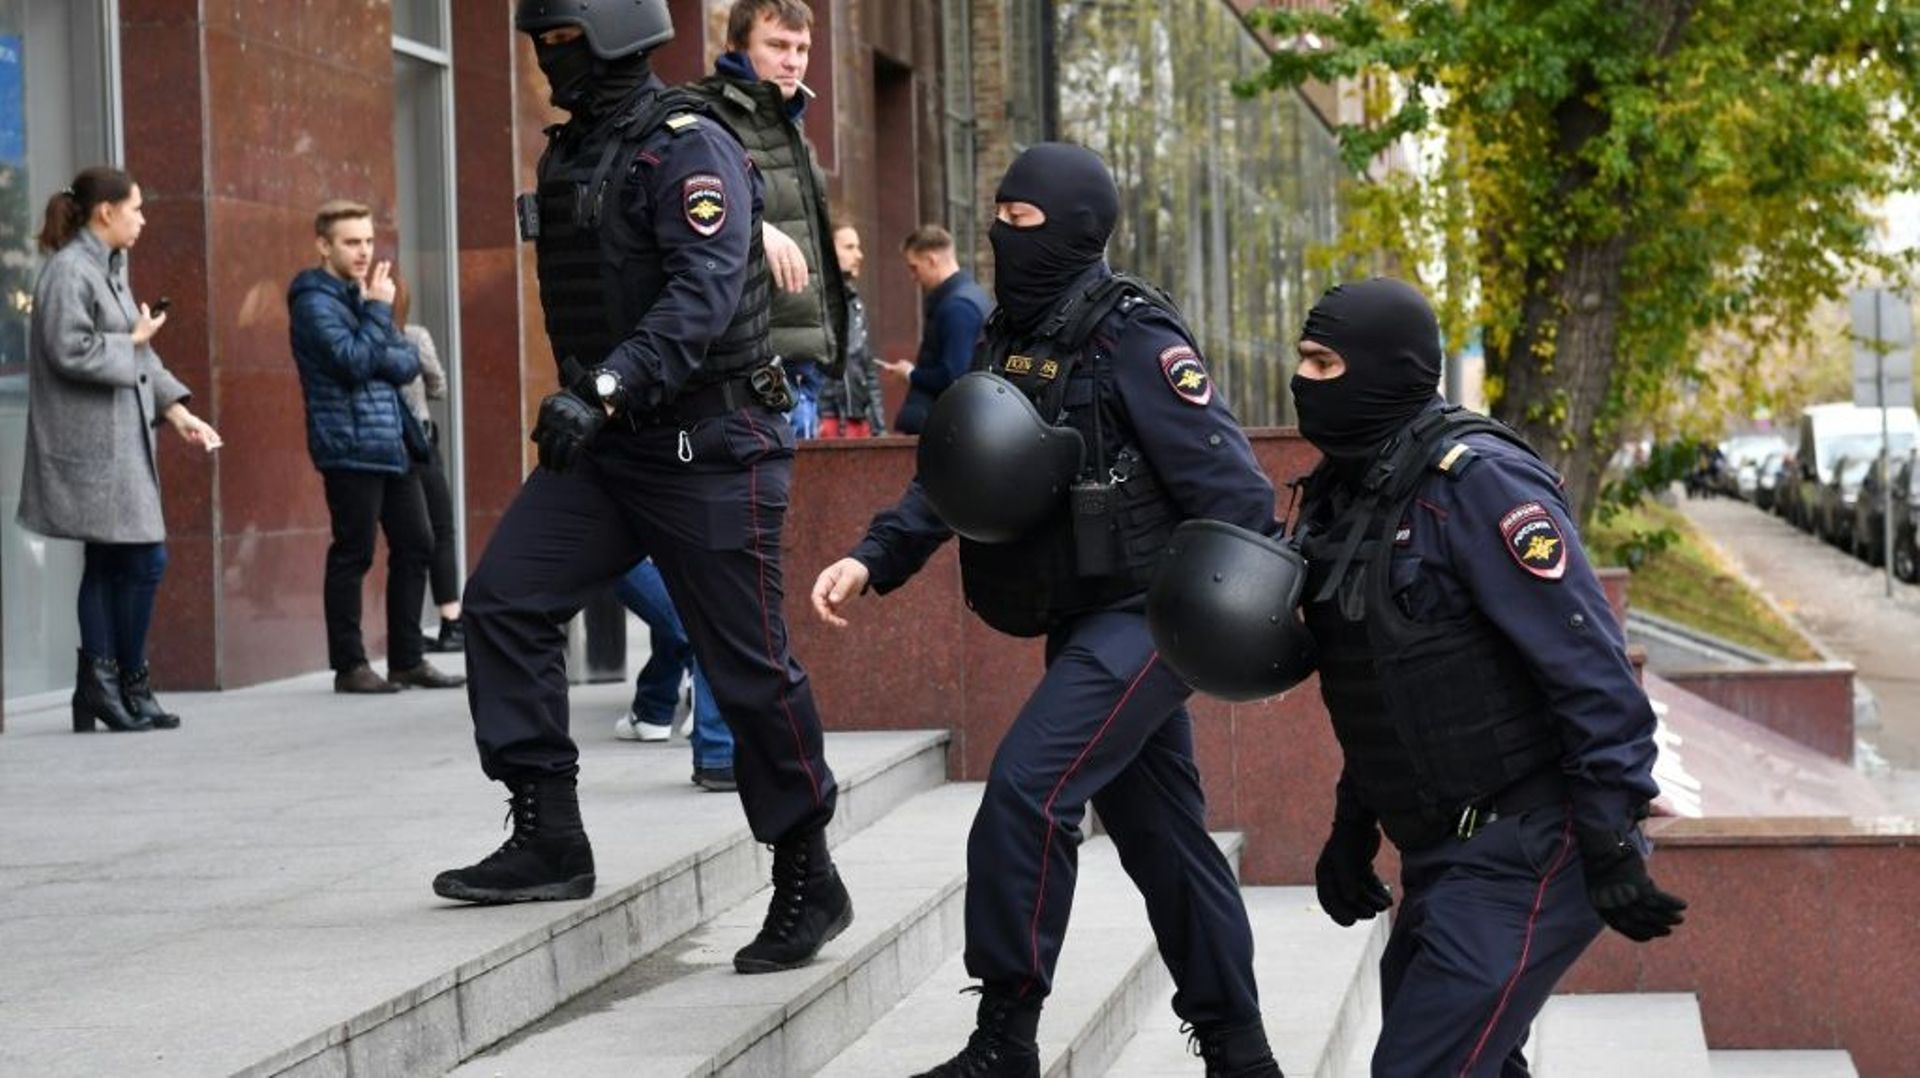 Des policiers se dirigent vers les bureaux de l'opposant russe Alexeï Navalny, le 15 octobre 2019 à Moscou